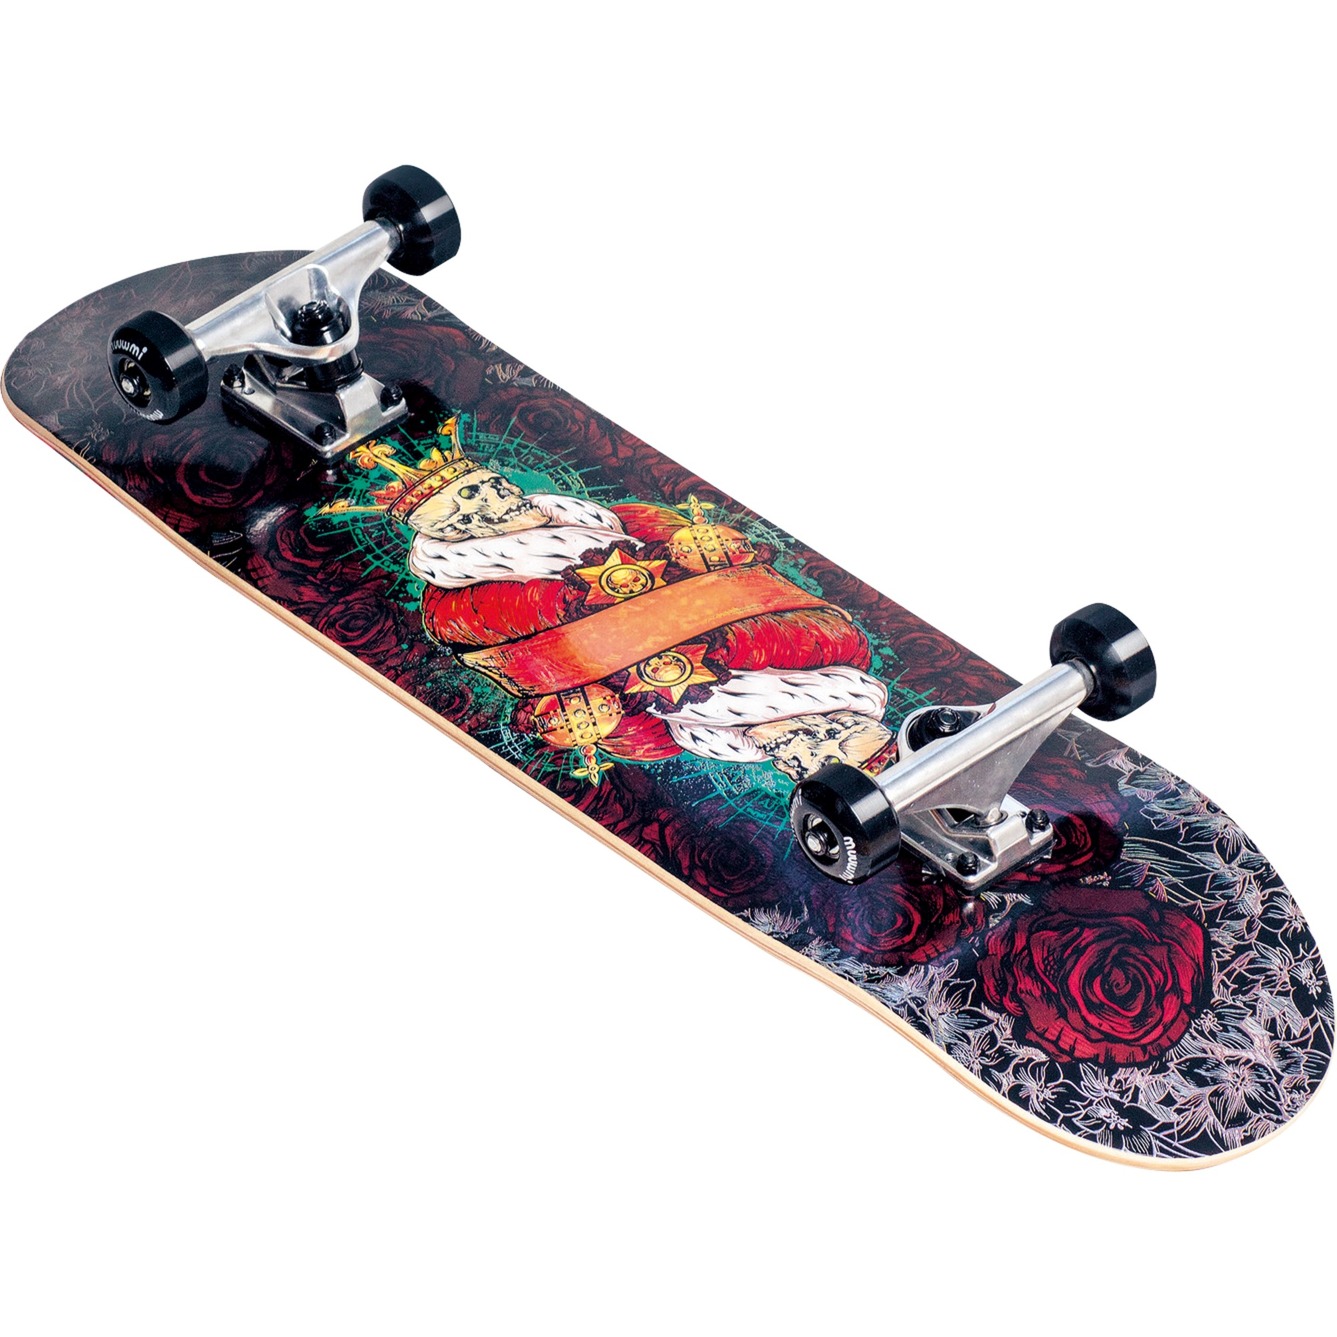 Image of Alternate - Skateboard ABEC 7 King online einkaufen bei Alternate